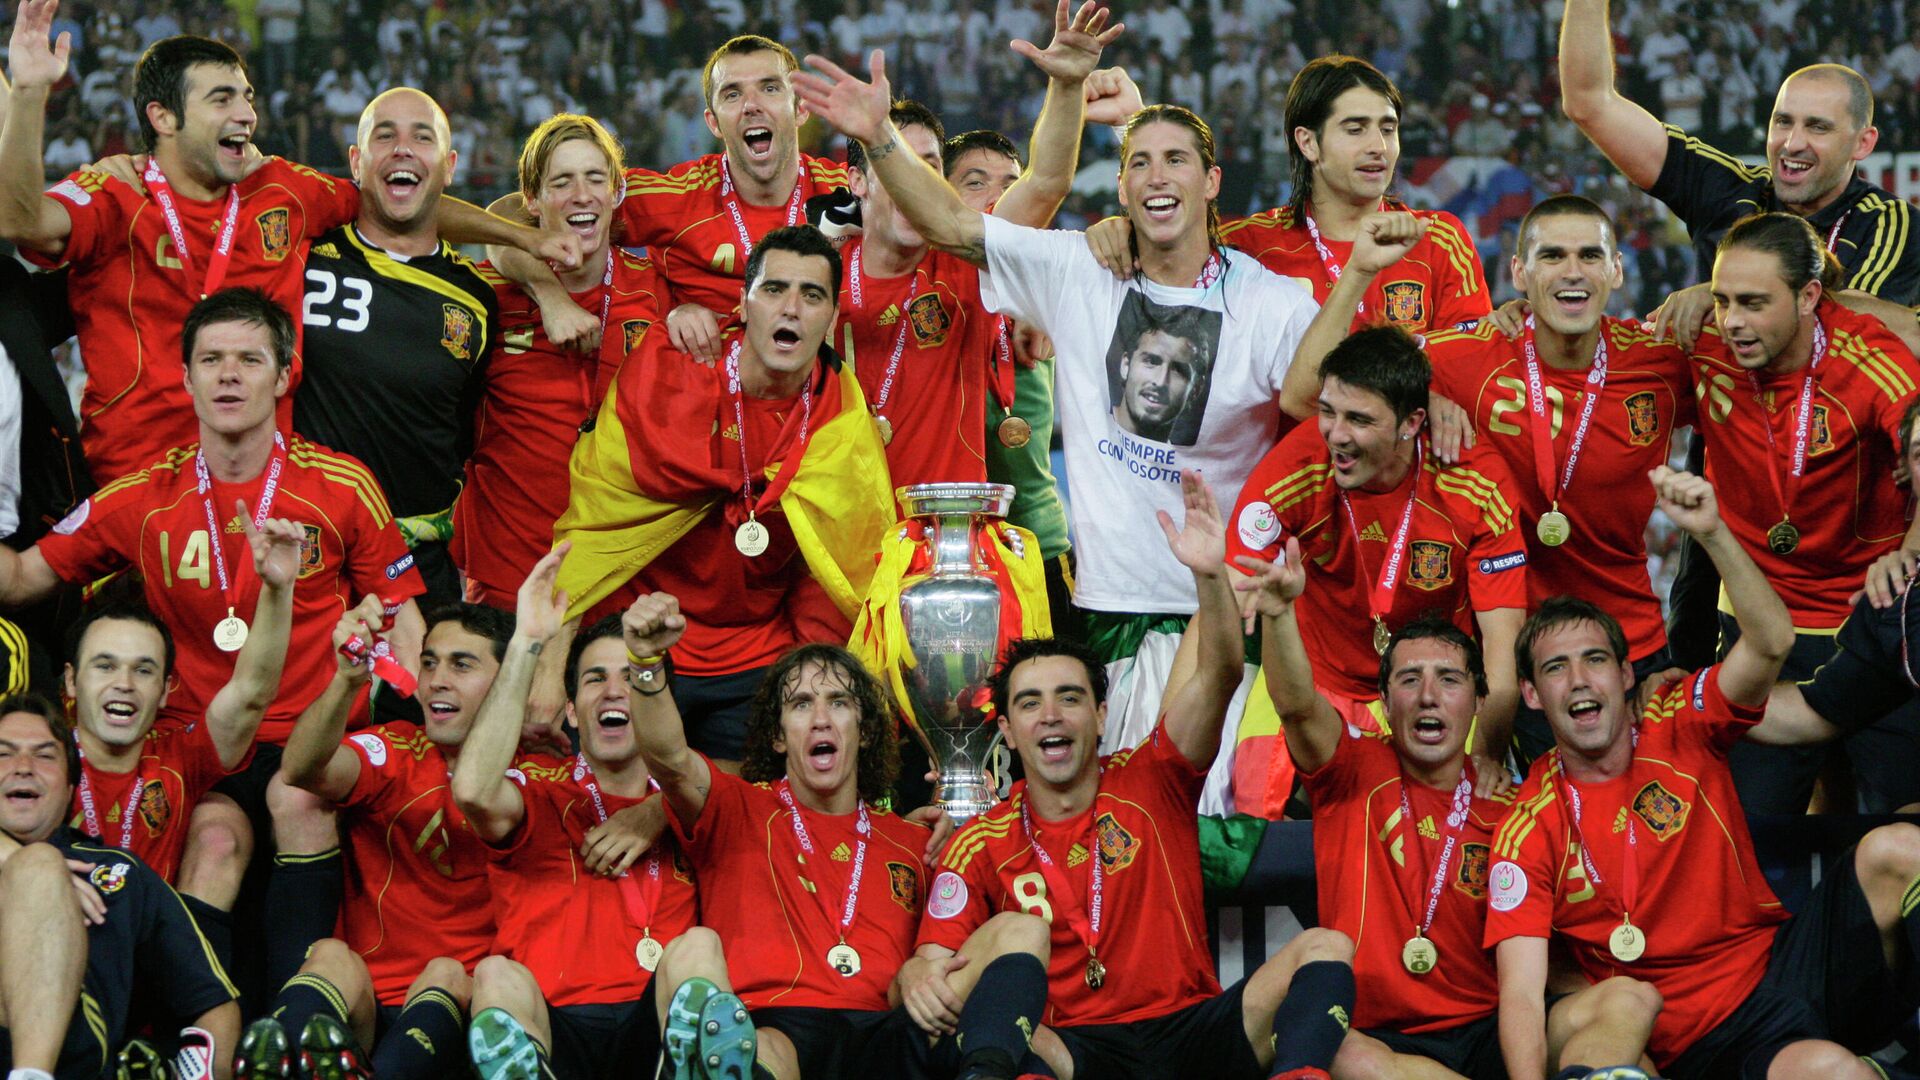 2008 год футбол чемпионат европы россия. Сборная Испании чемпион Европы 2008. Сборная Испании 2008 состав. Че 2008 Испания.